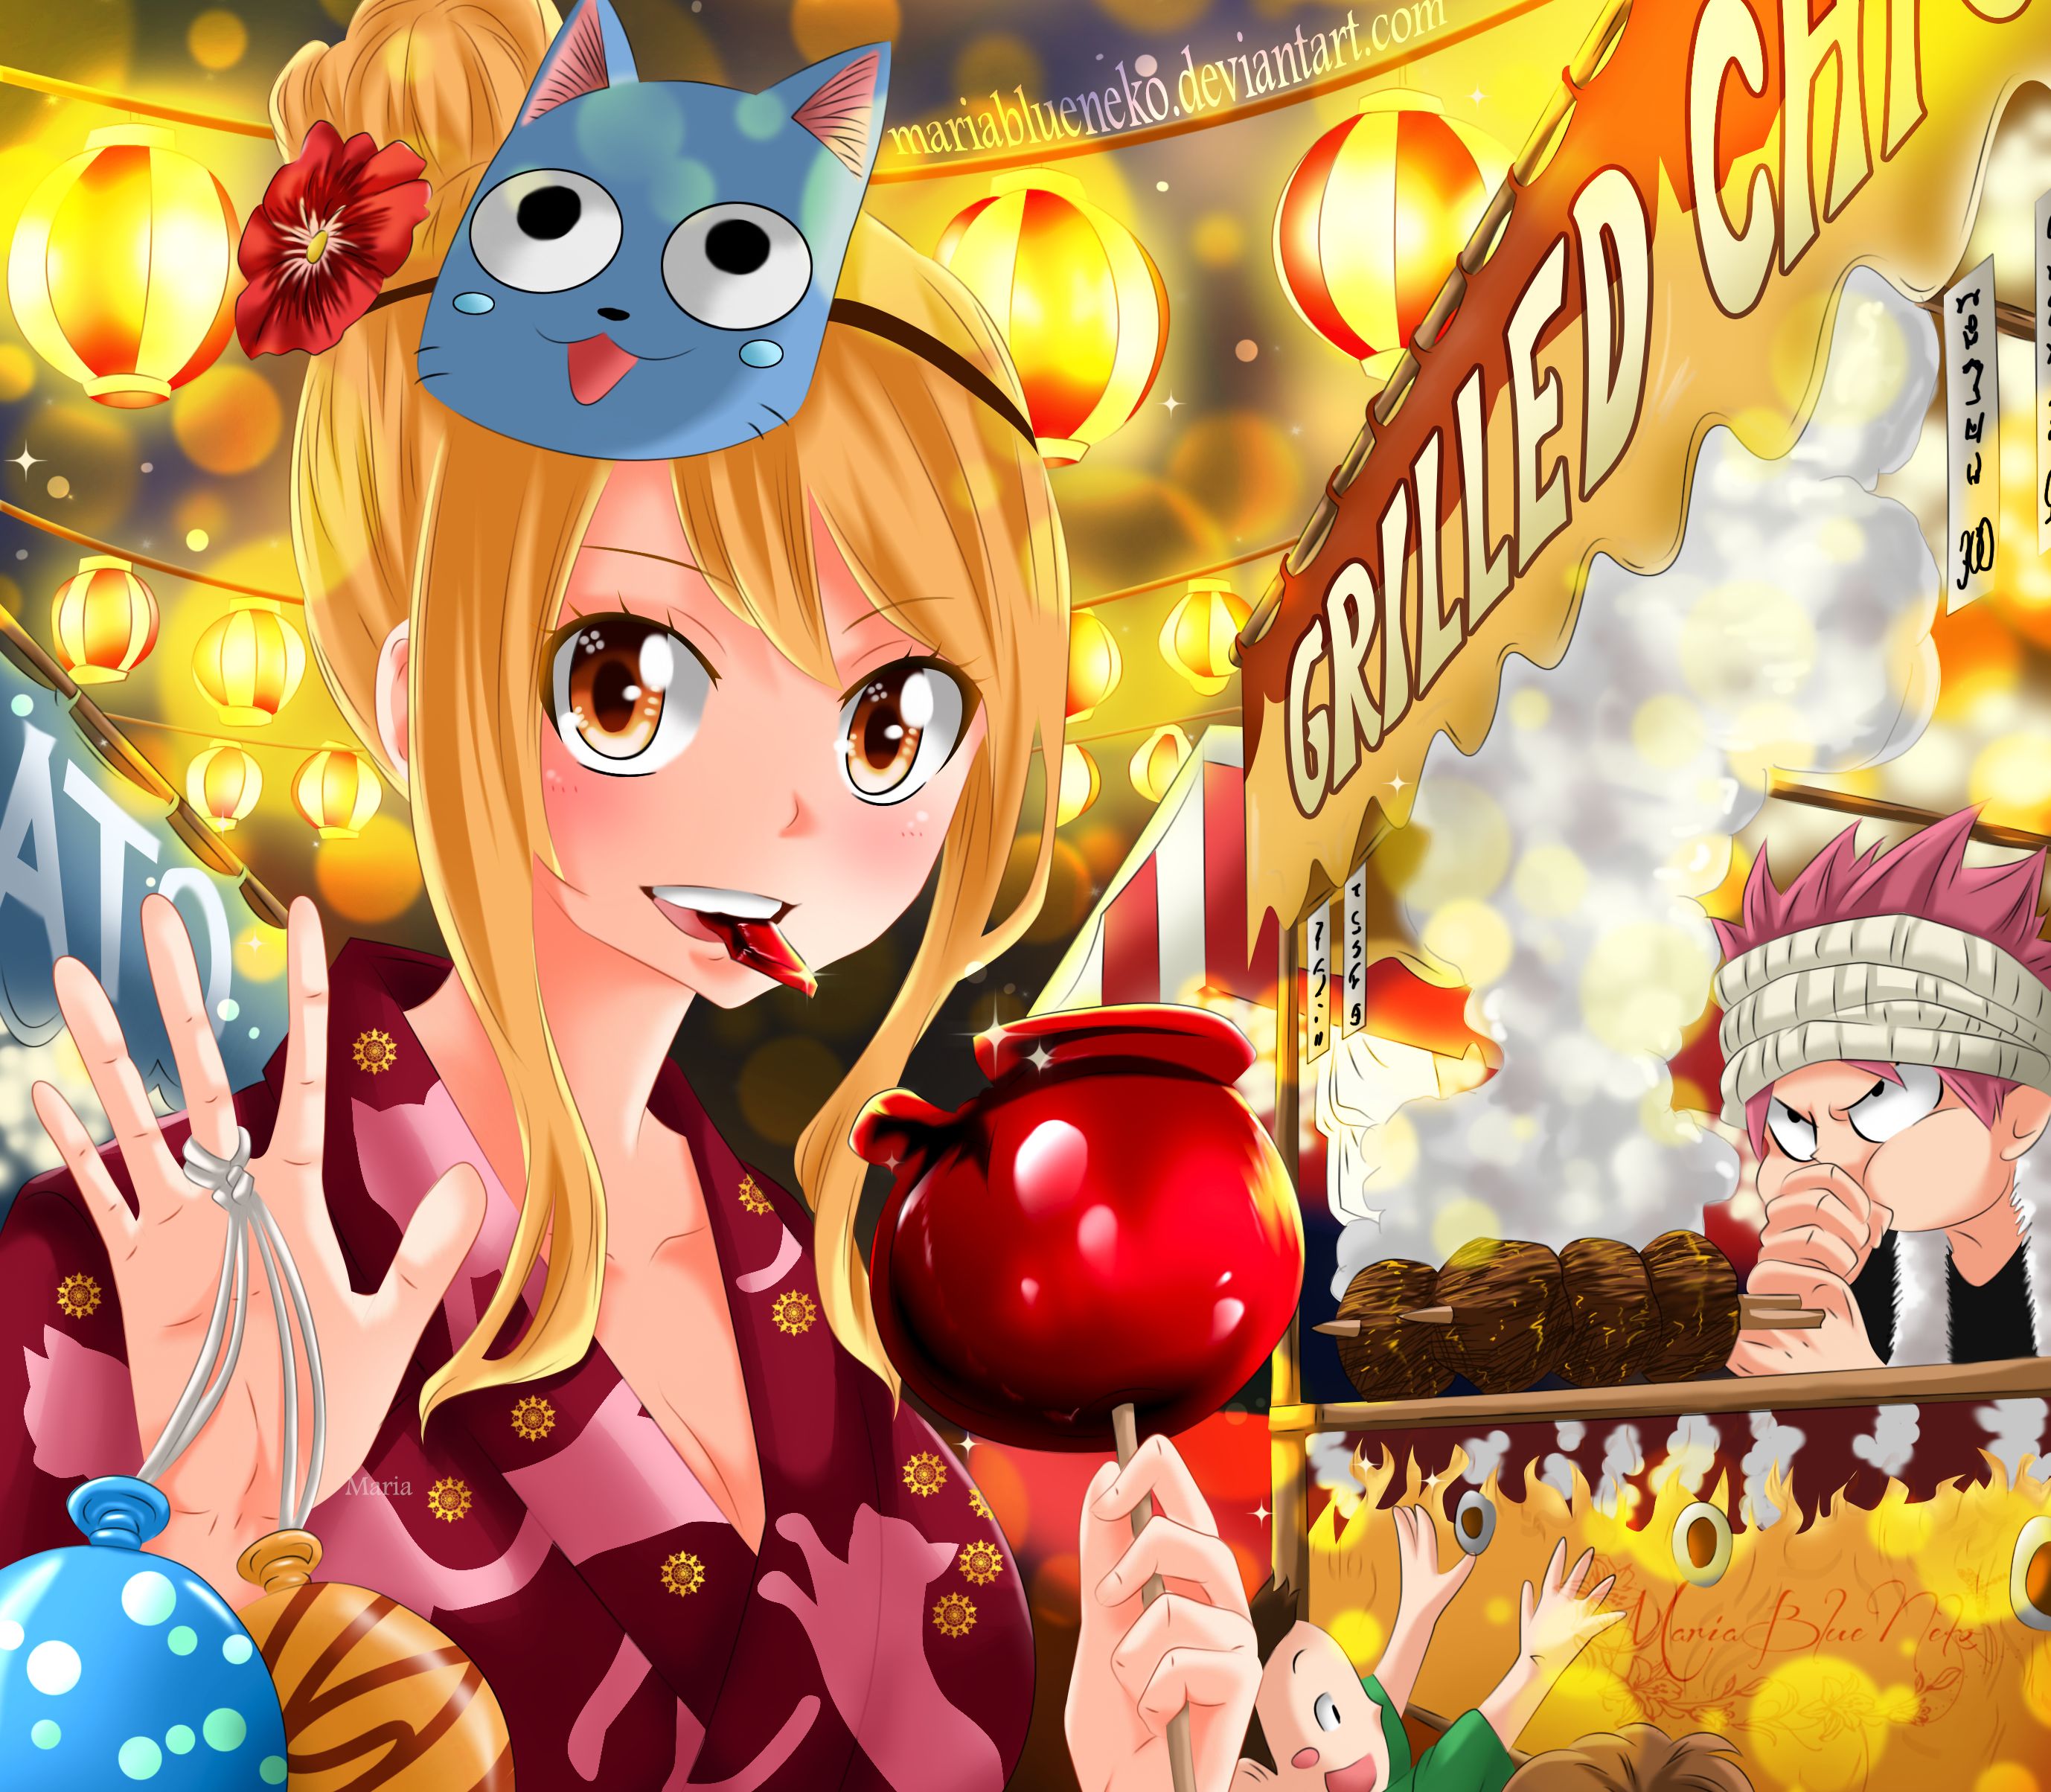 Descarga gratuita de fondo de pantalla para móvil de Fairy Tail, Animado, Lucy Heartfilia, Natsu Dragneel.